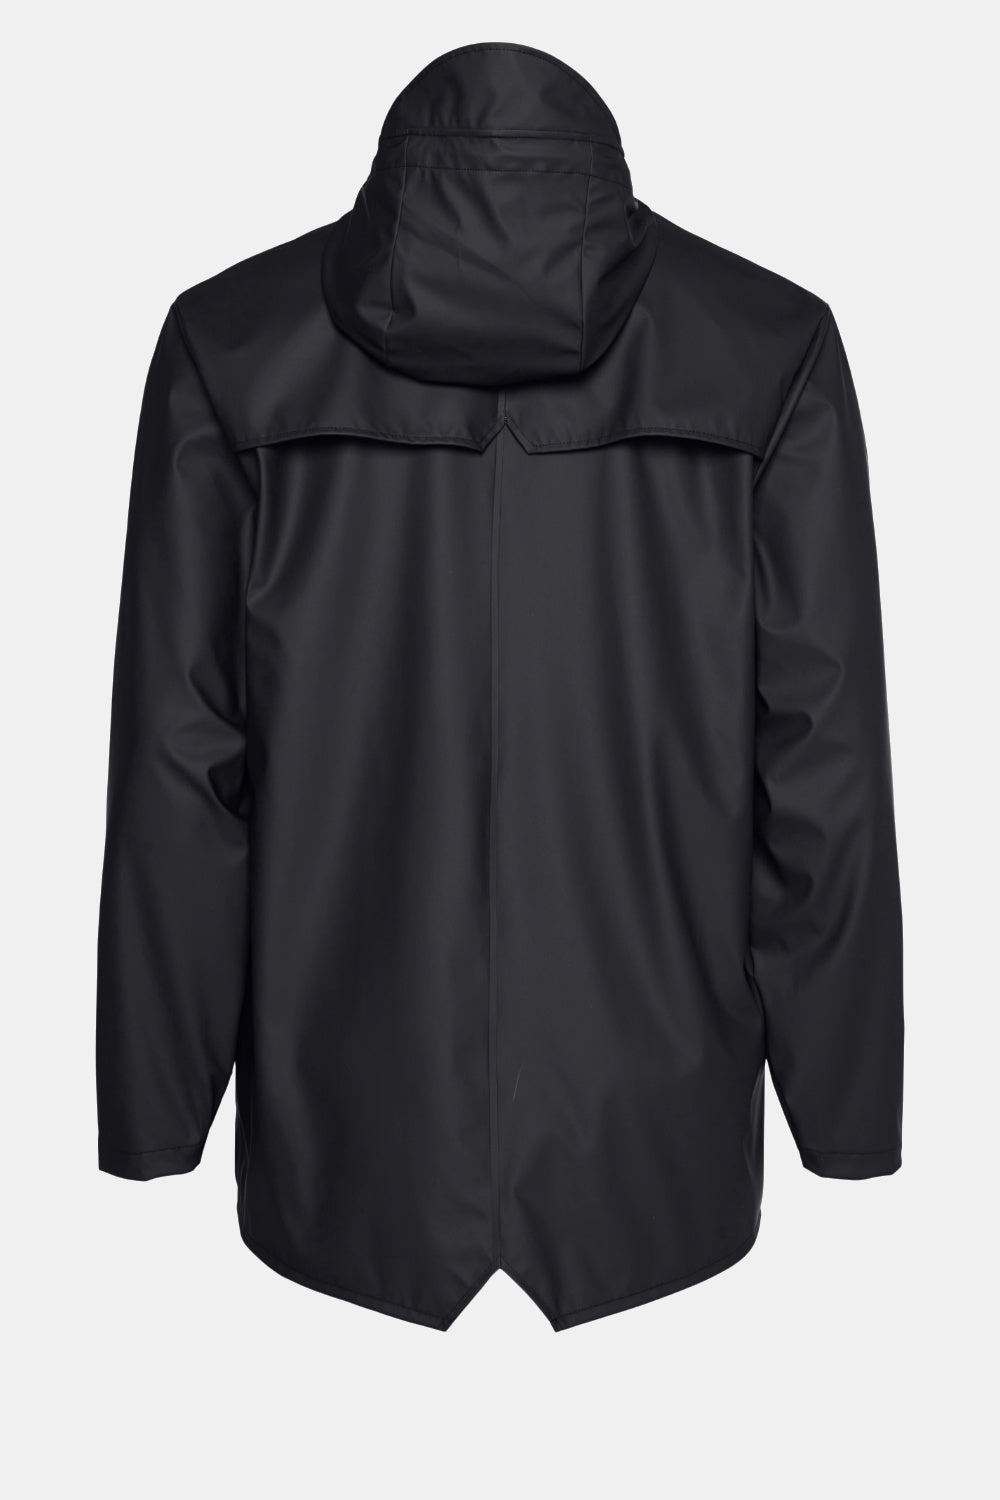 Rains Jacket (Black) | Number Six